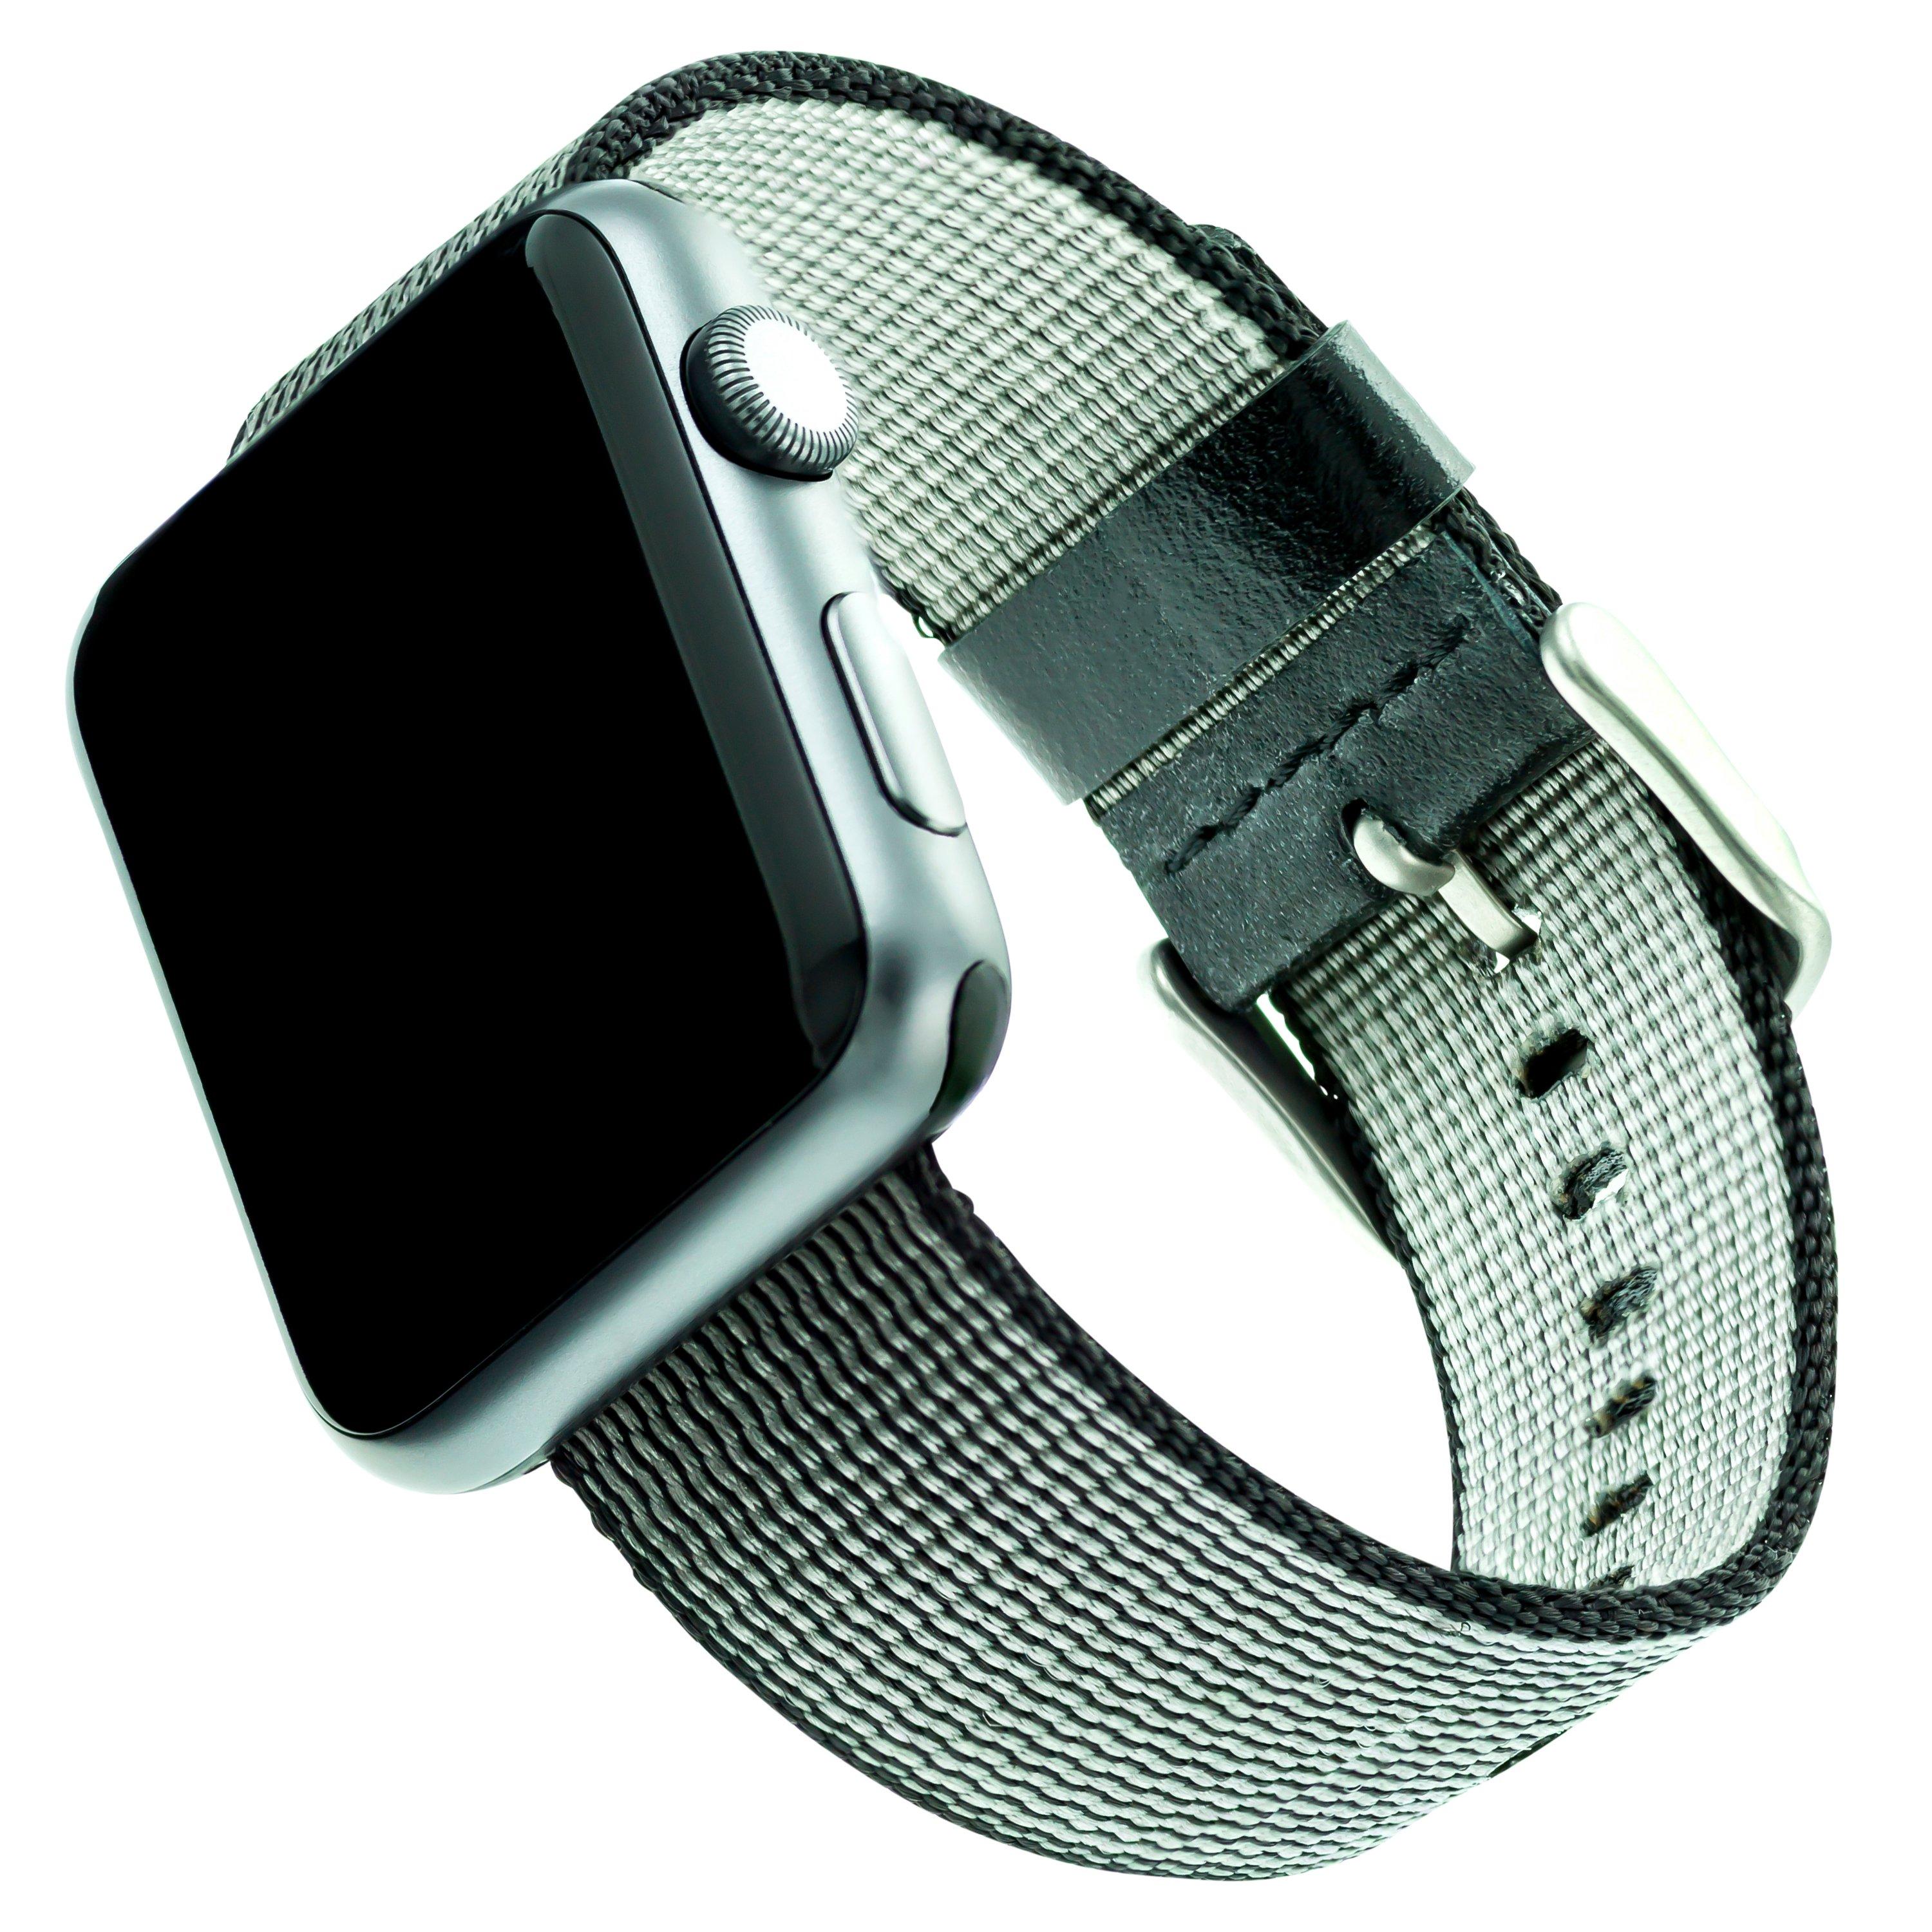 Apple Watch Case Waterproof